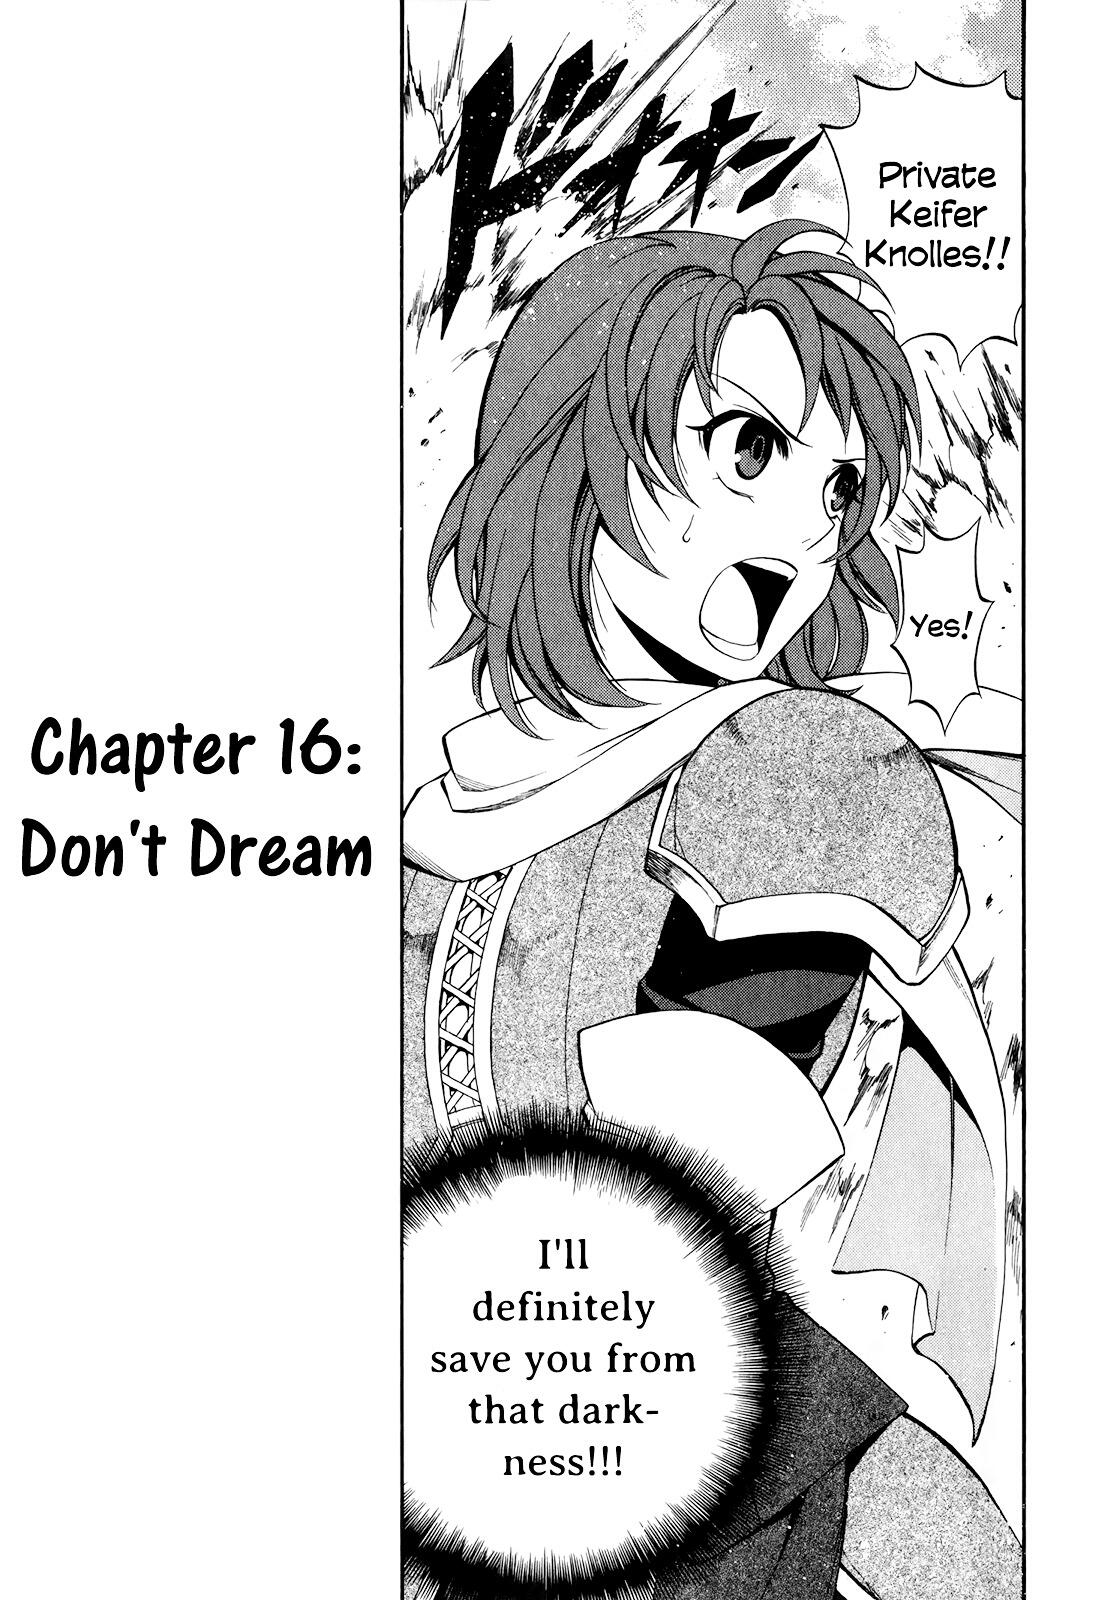 Read Densetsu No Yuusha No Densetsu Vol.1 Chapter 2 : The Napping